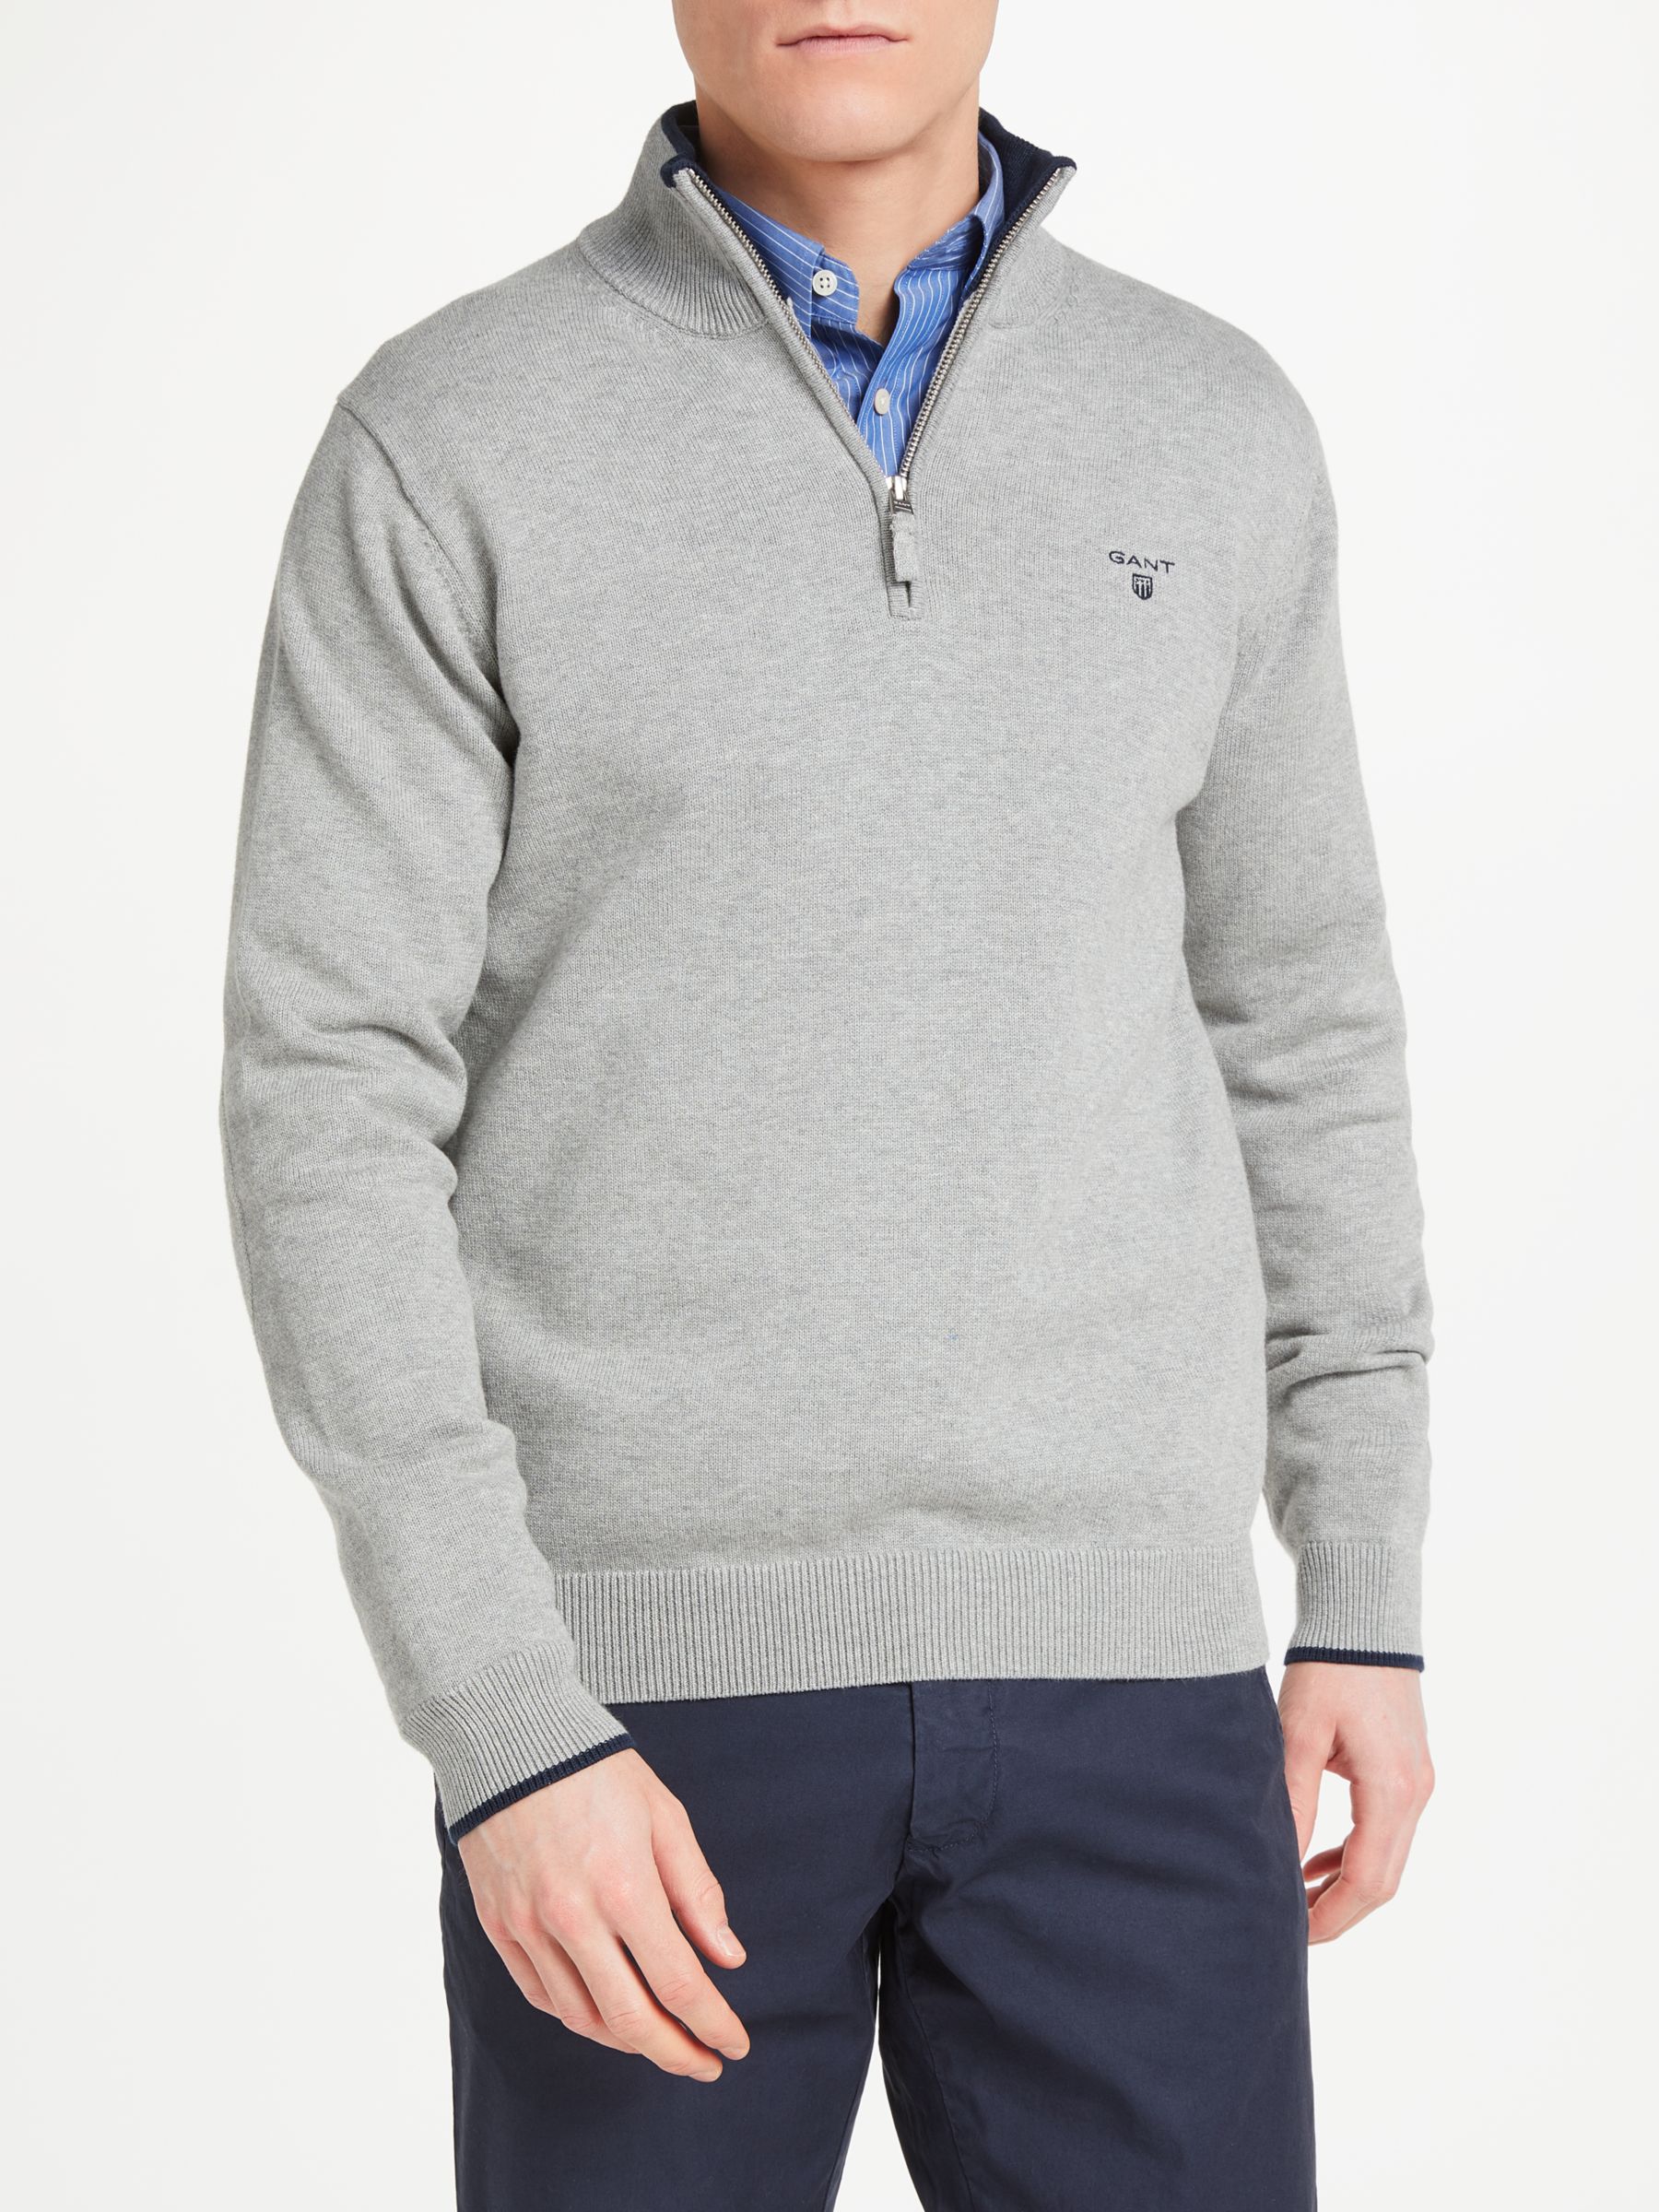 GANT Cotton Contrast Half Zip Sweatshirt, Grey, XXXL